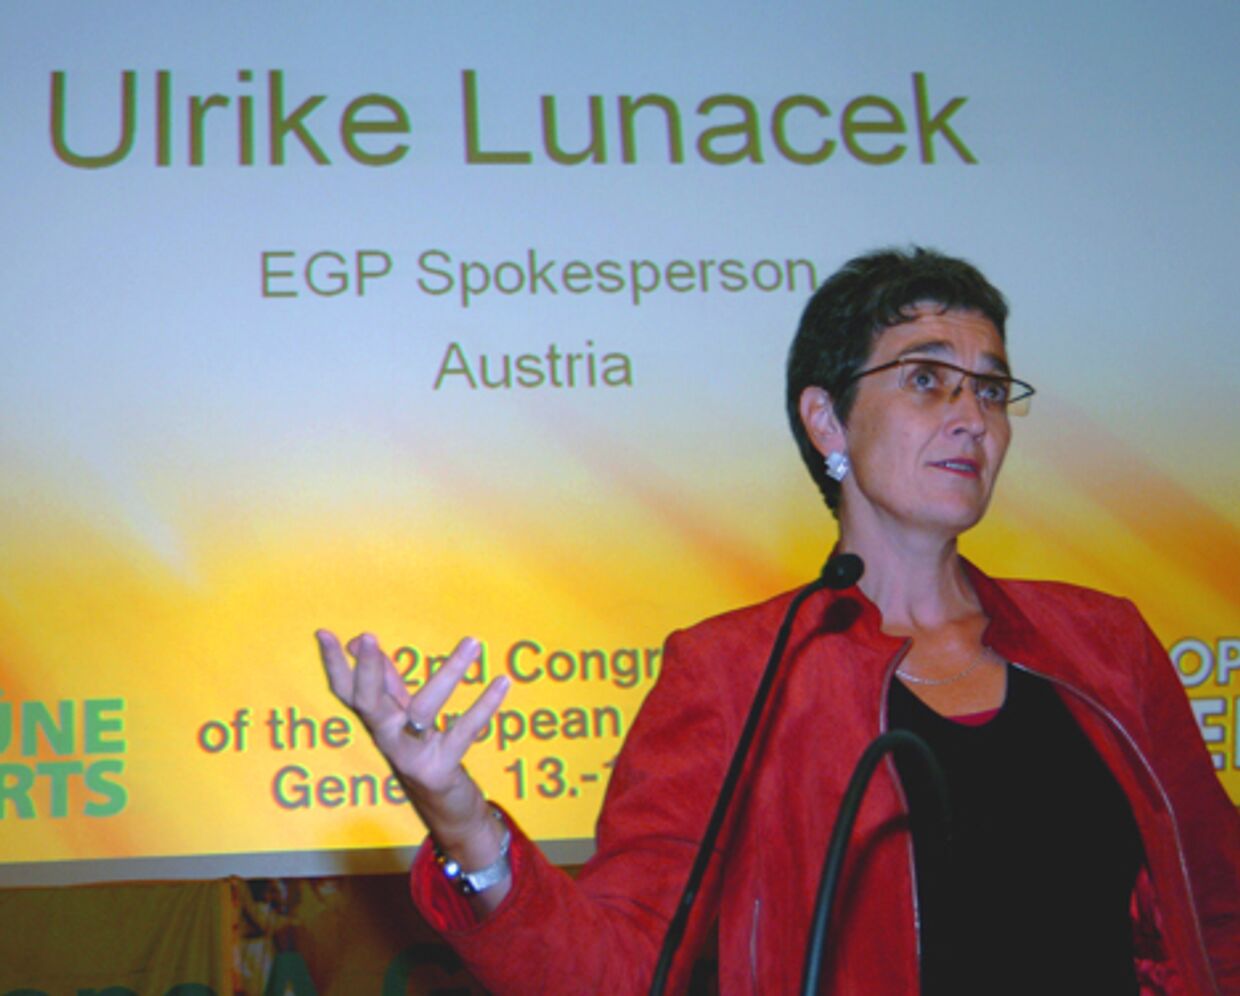 Представитель европейского парламента в косово Ульрике Лунацек